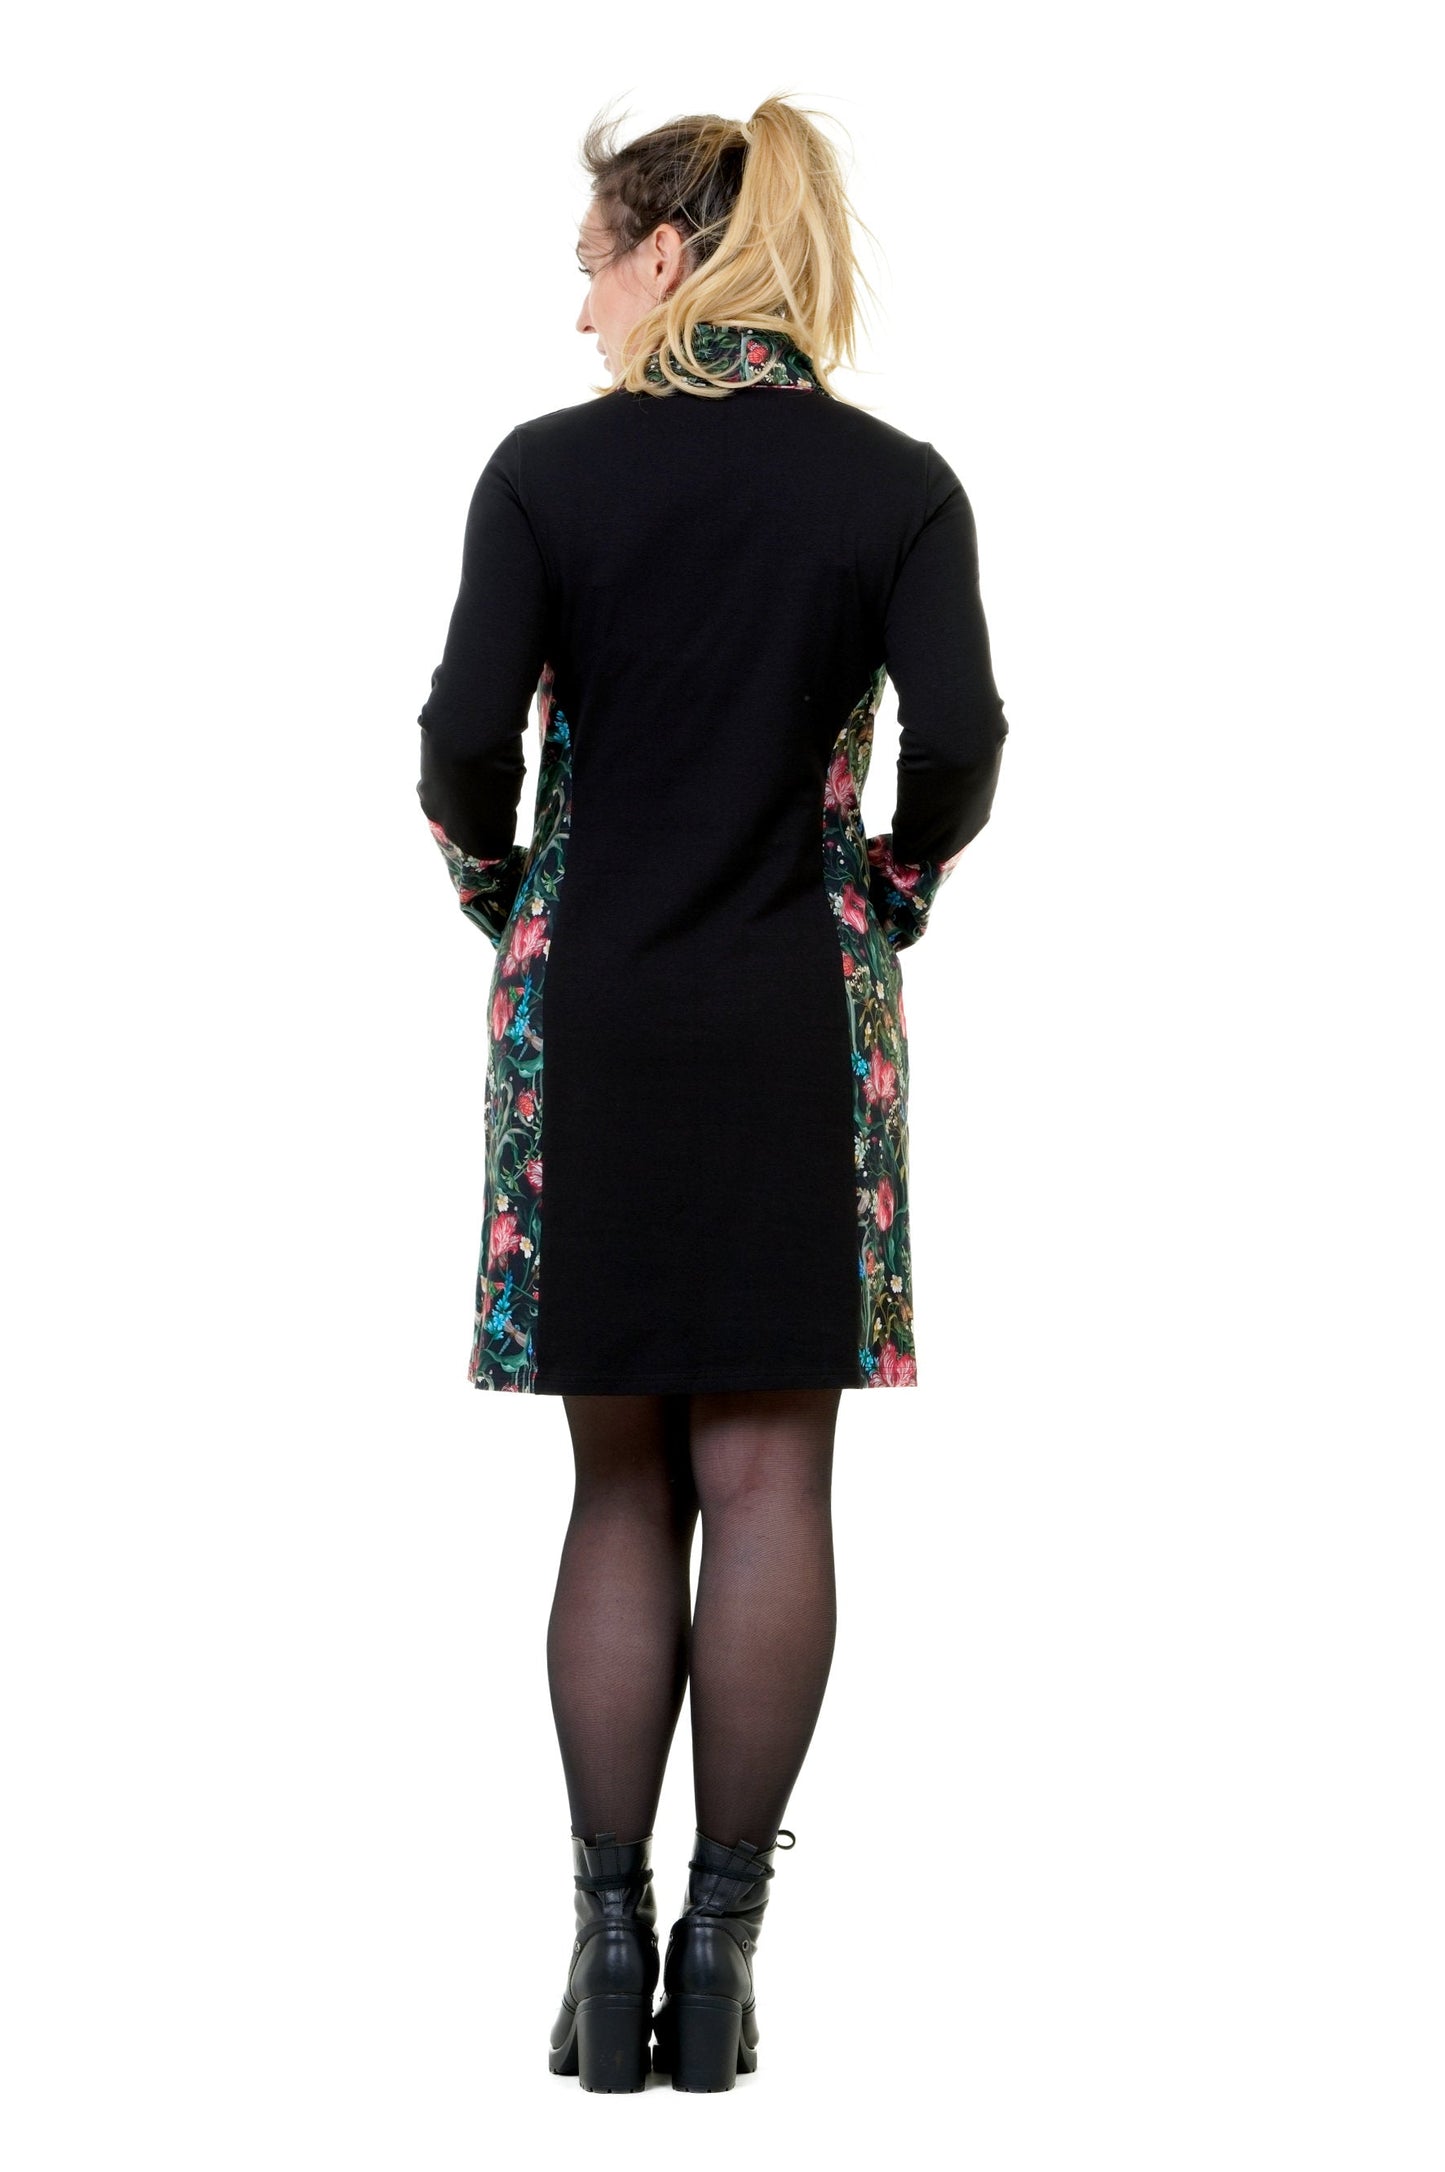 SALE Größe 3XL Herbstkönigin Kleid schwarz Dunkelbunt